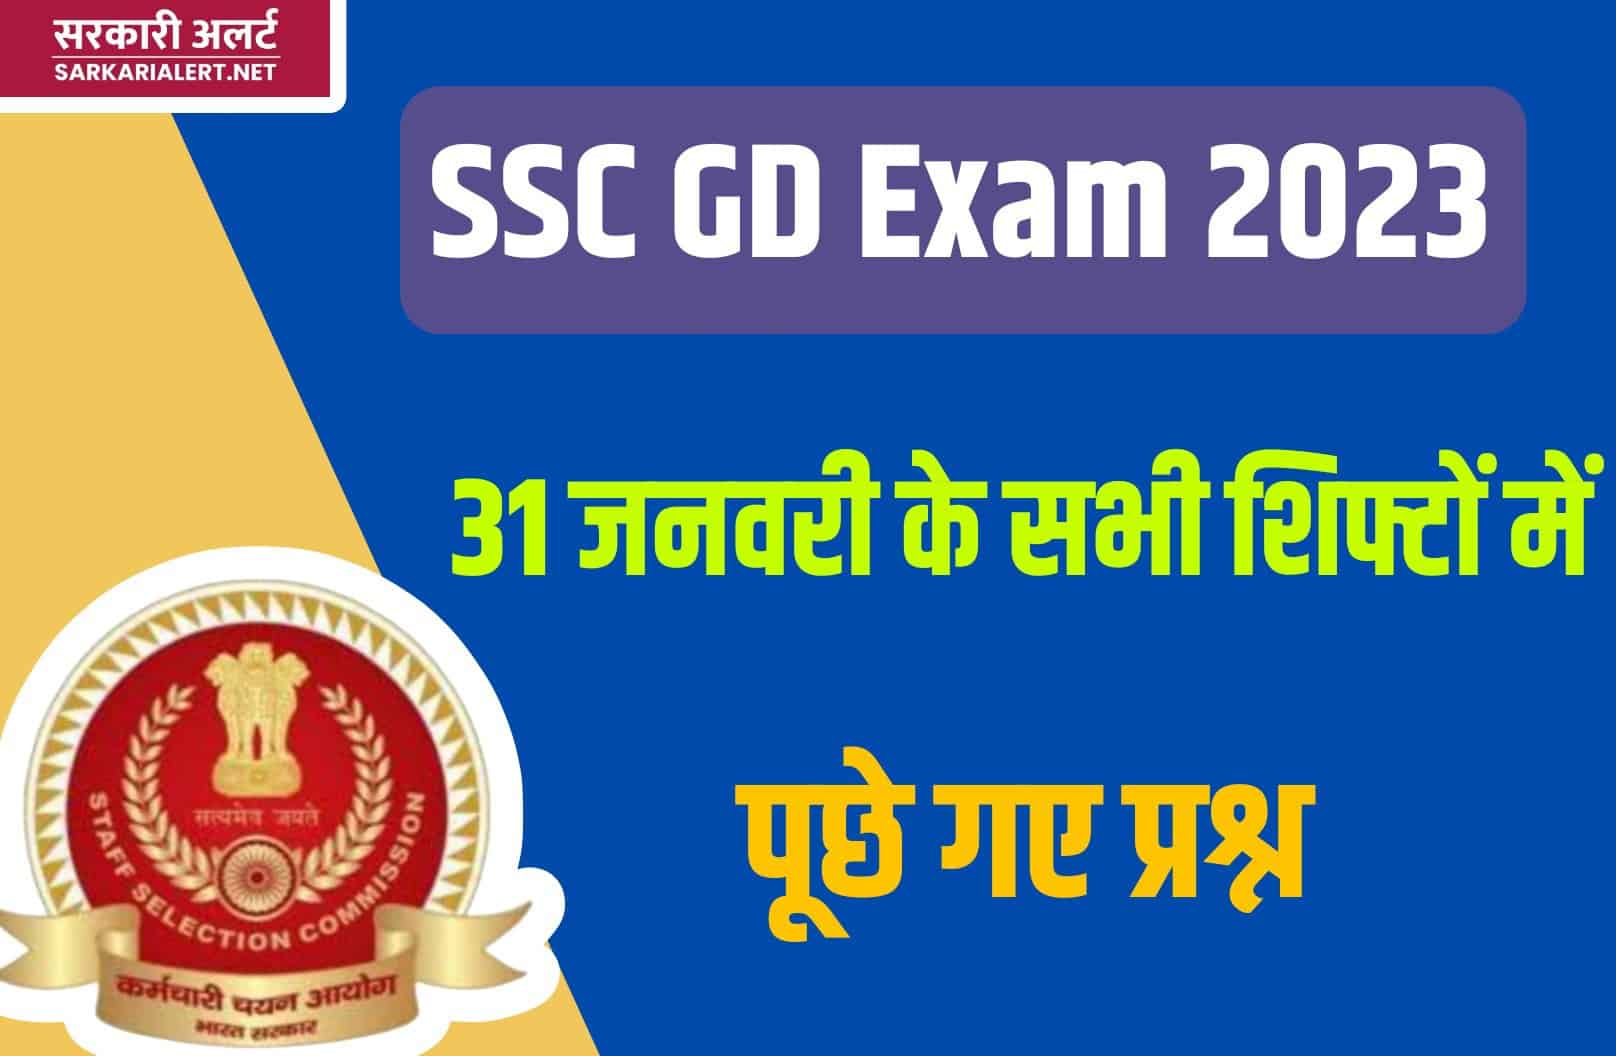 SSC GD Exam 2023 | 31 जनवरी परीक्षा के सभी शिफ्टों में पूछे गए मुख्य प्रश्नों का संग्रह